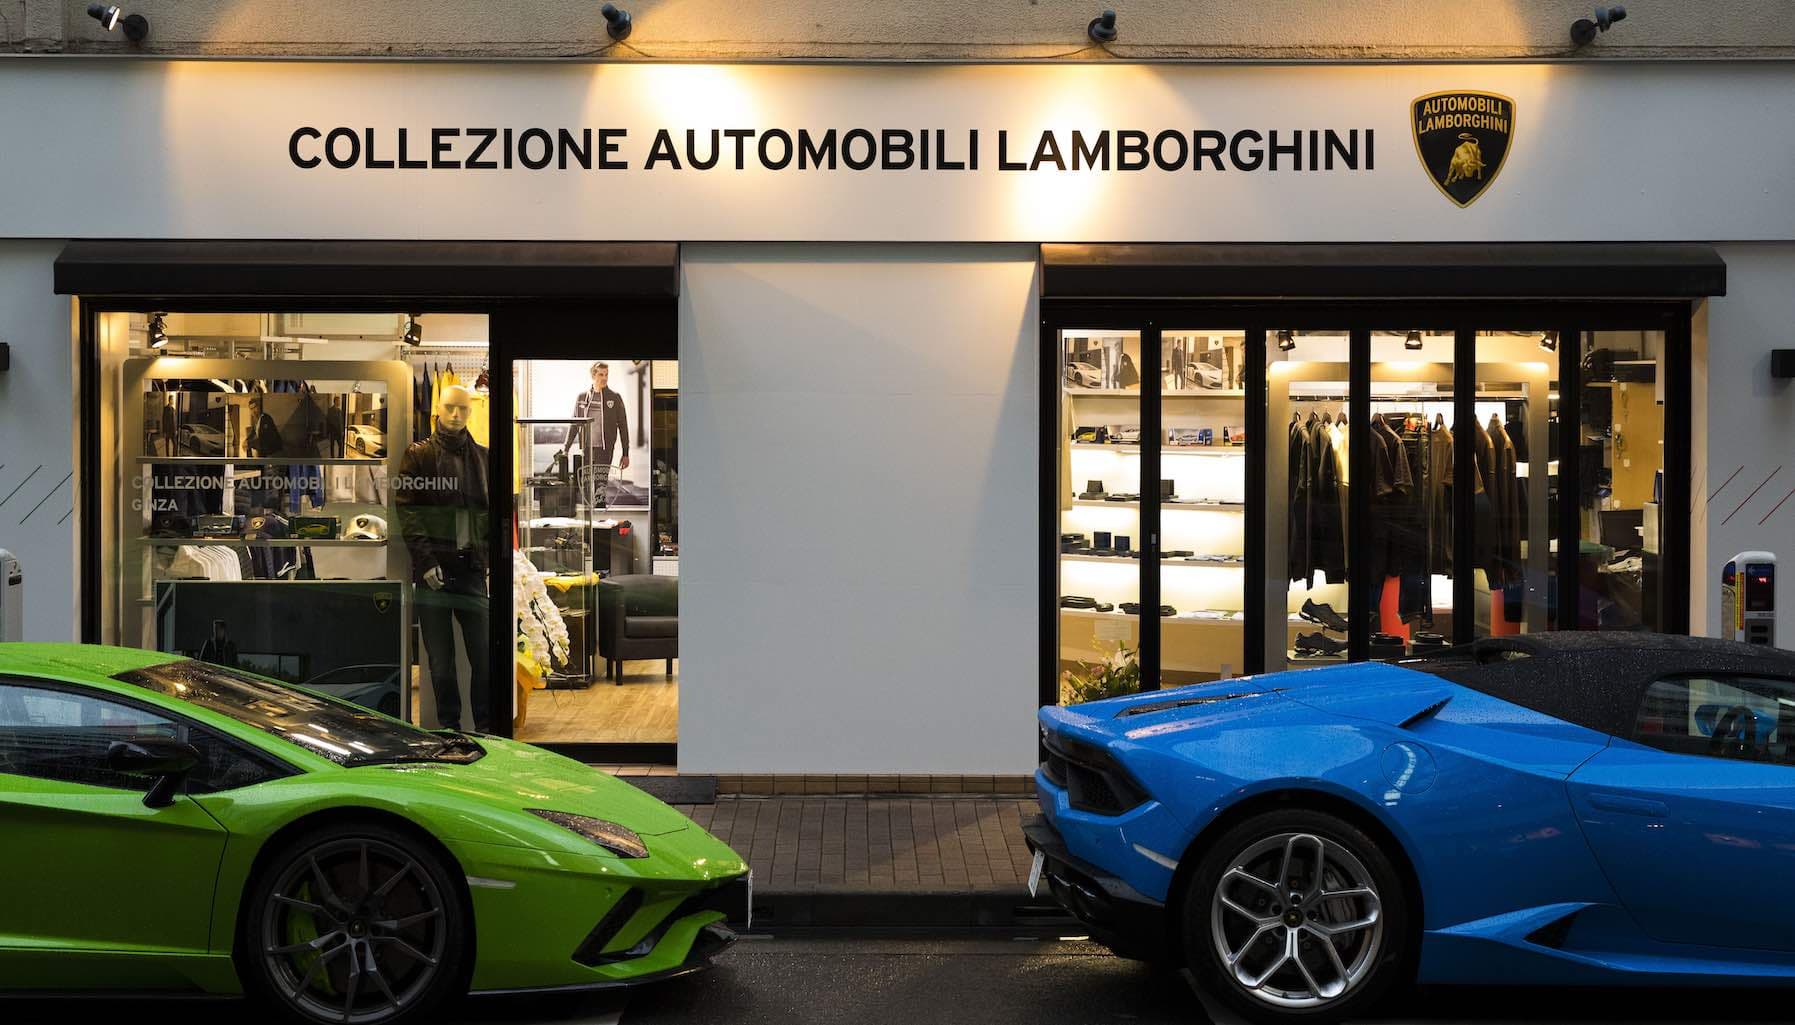 Collezione Automobili Lamborghini –  Nơi siêu xe đồng hành cùng xa xỉ phẩm